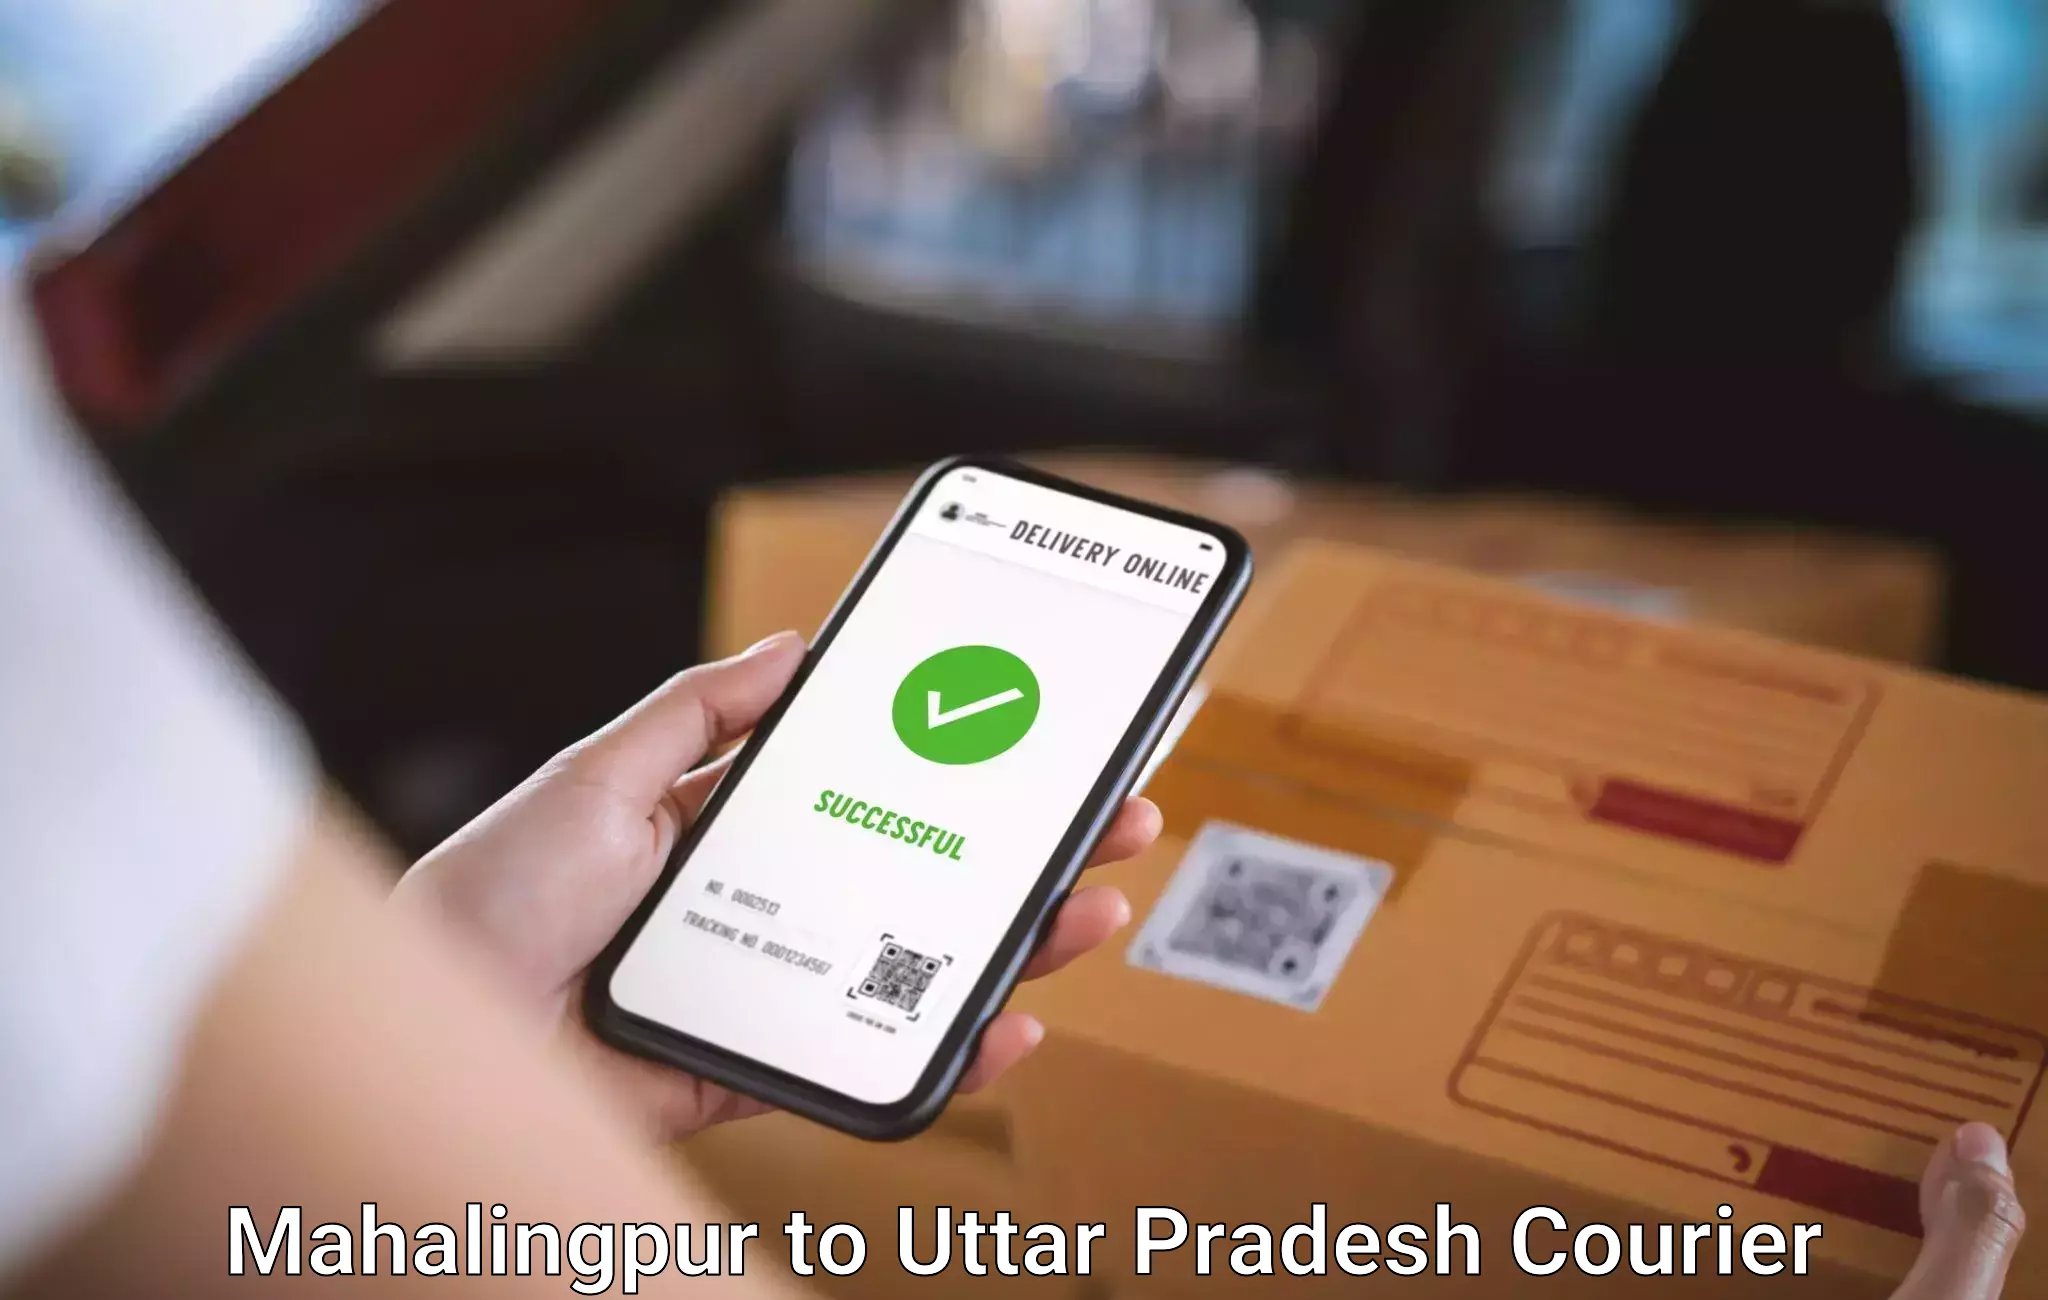 Baggage shipping optimization Mahalingpur to Mathura